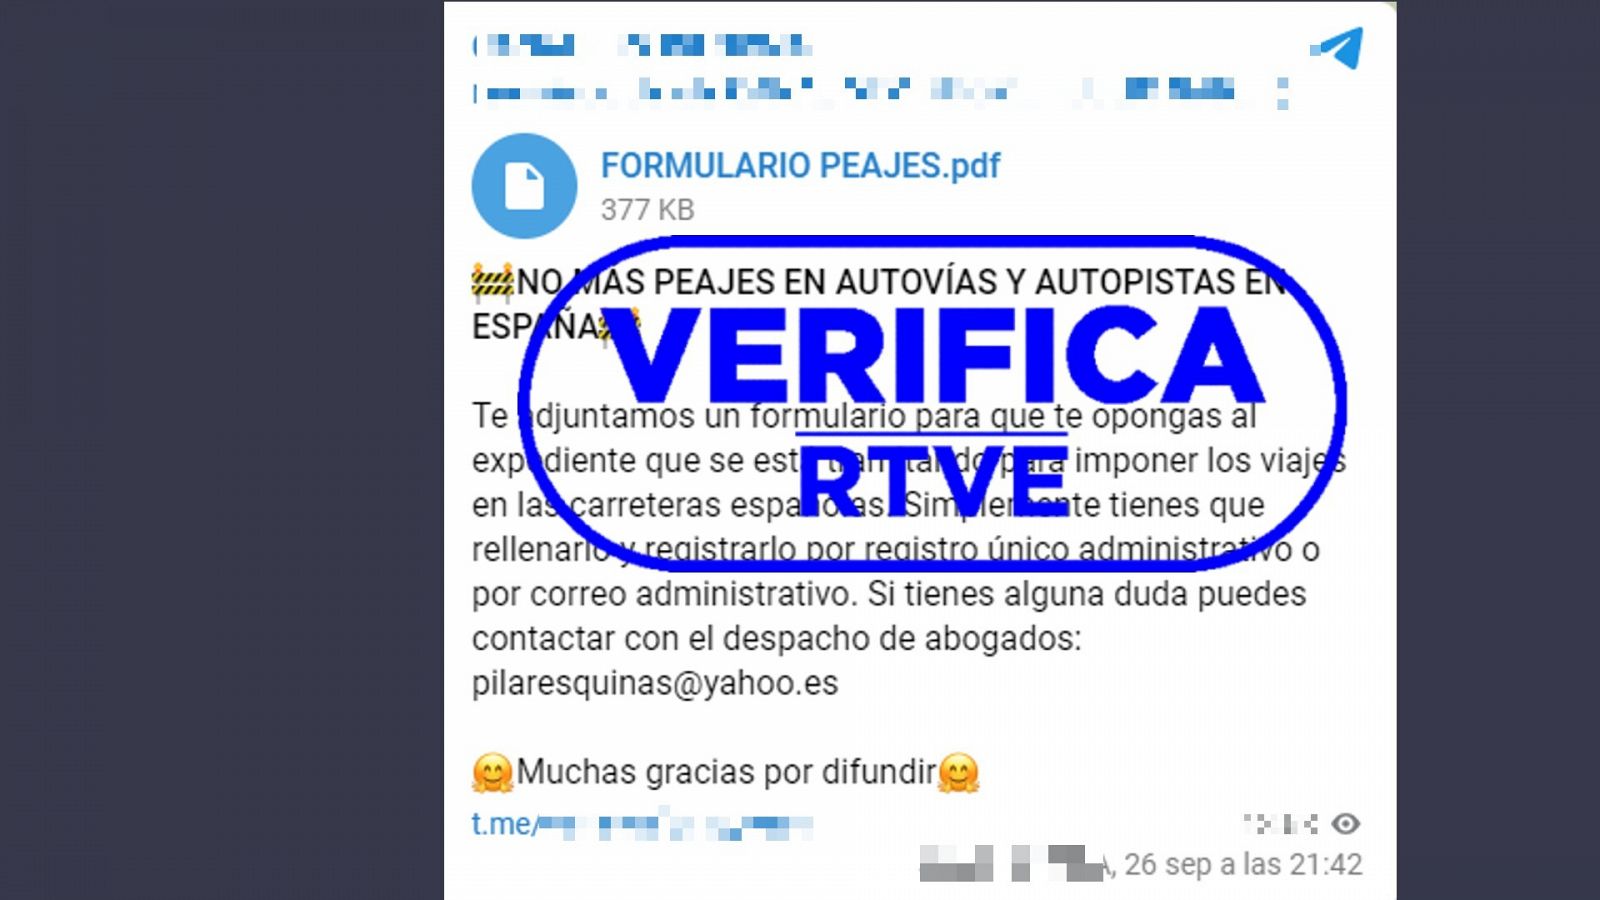 Mensaje de Telegram que difunde contenido sobre el plan del Gobierno de implantar peajes en las carreteras españolas, con el sello 'VerificaRTVE' en azul